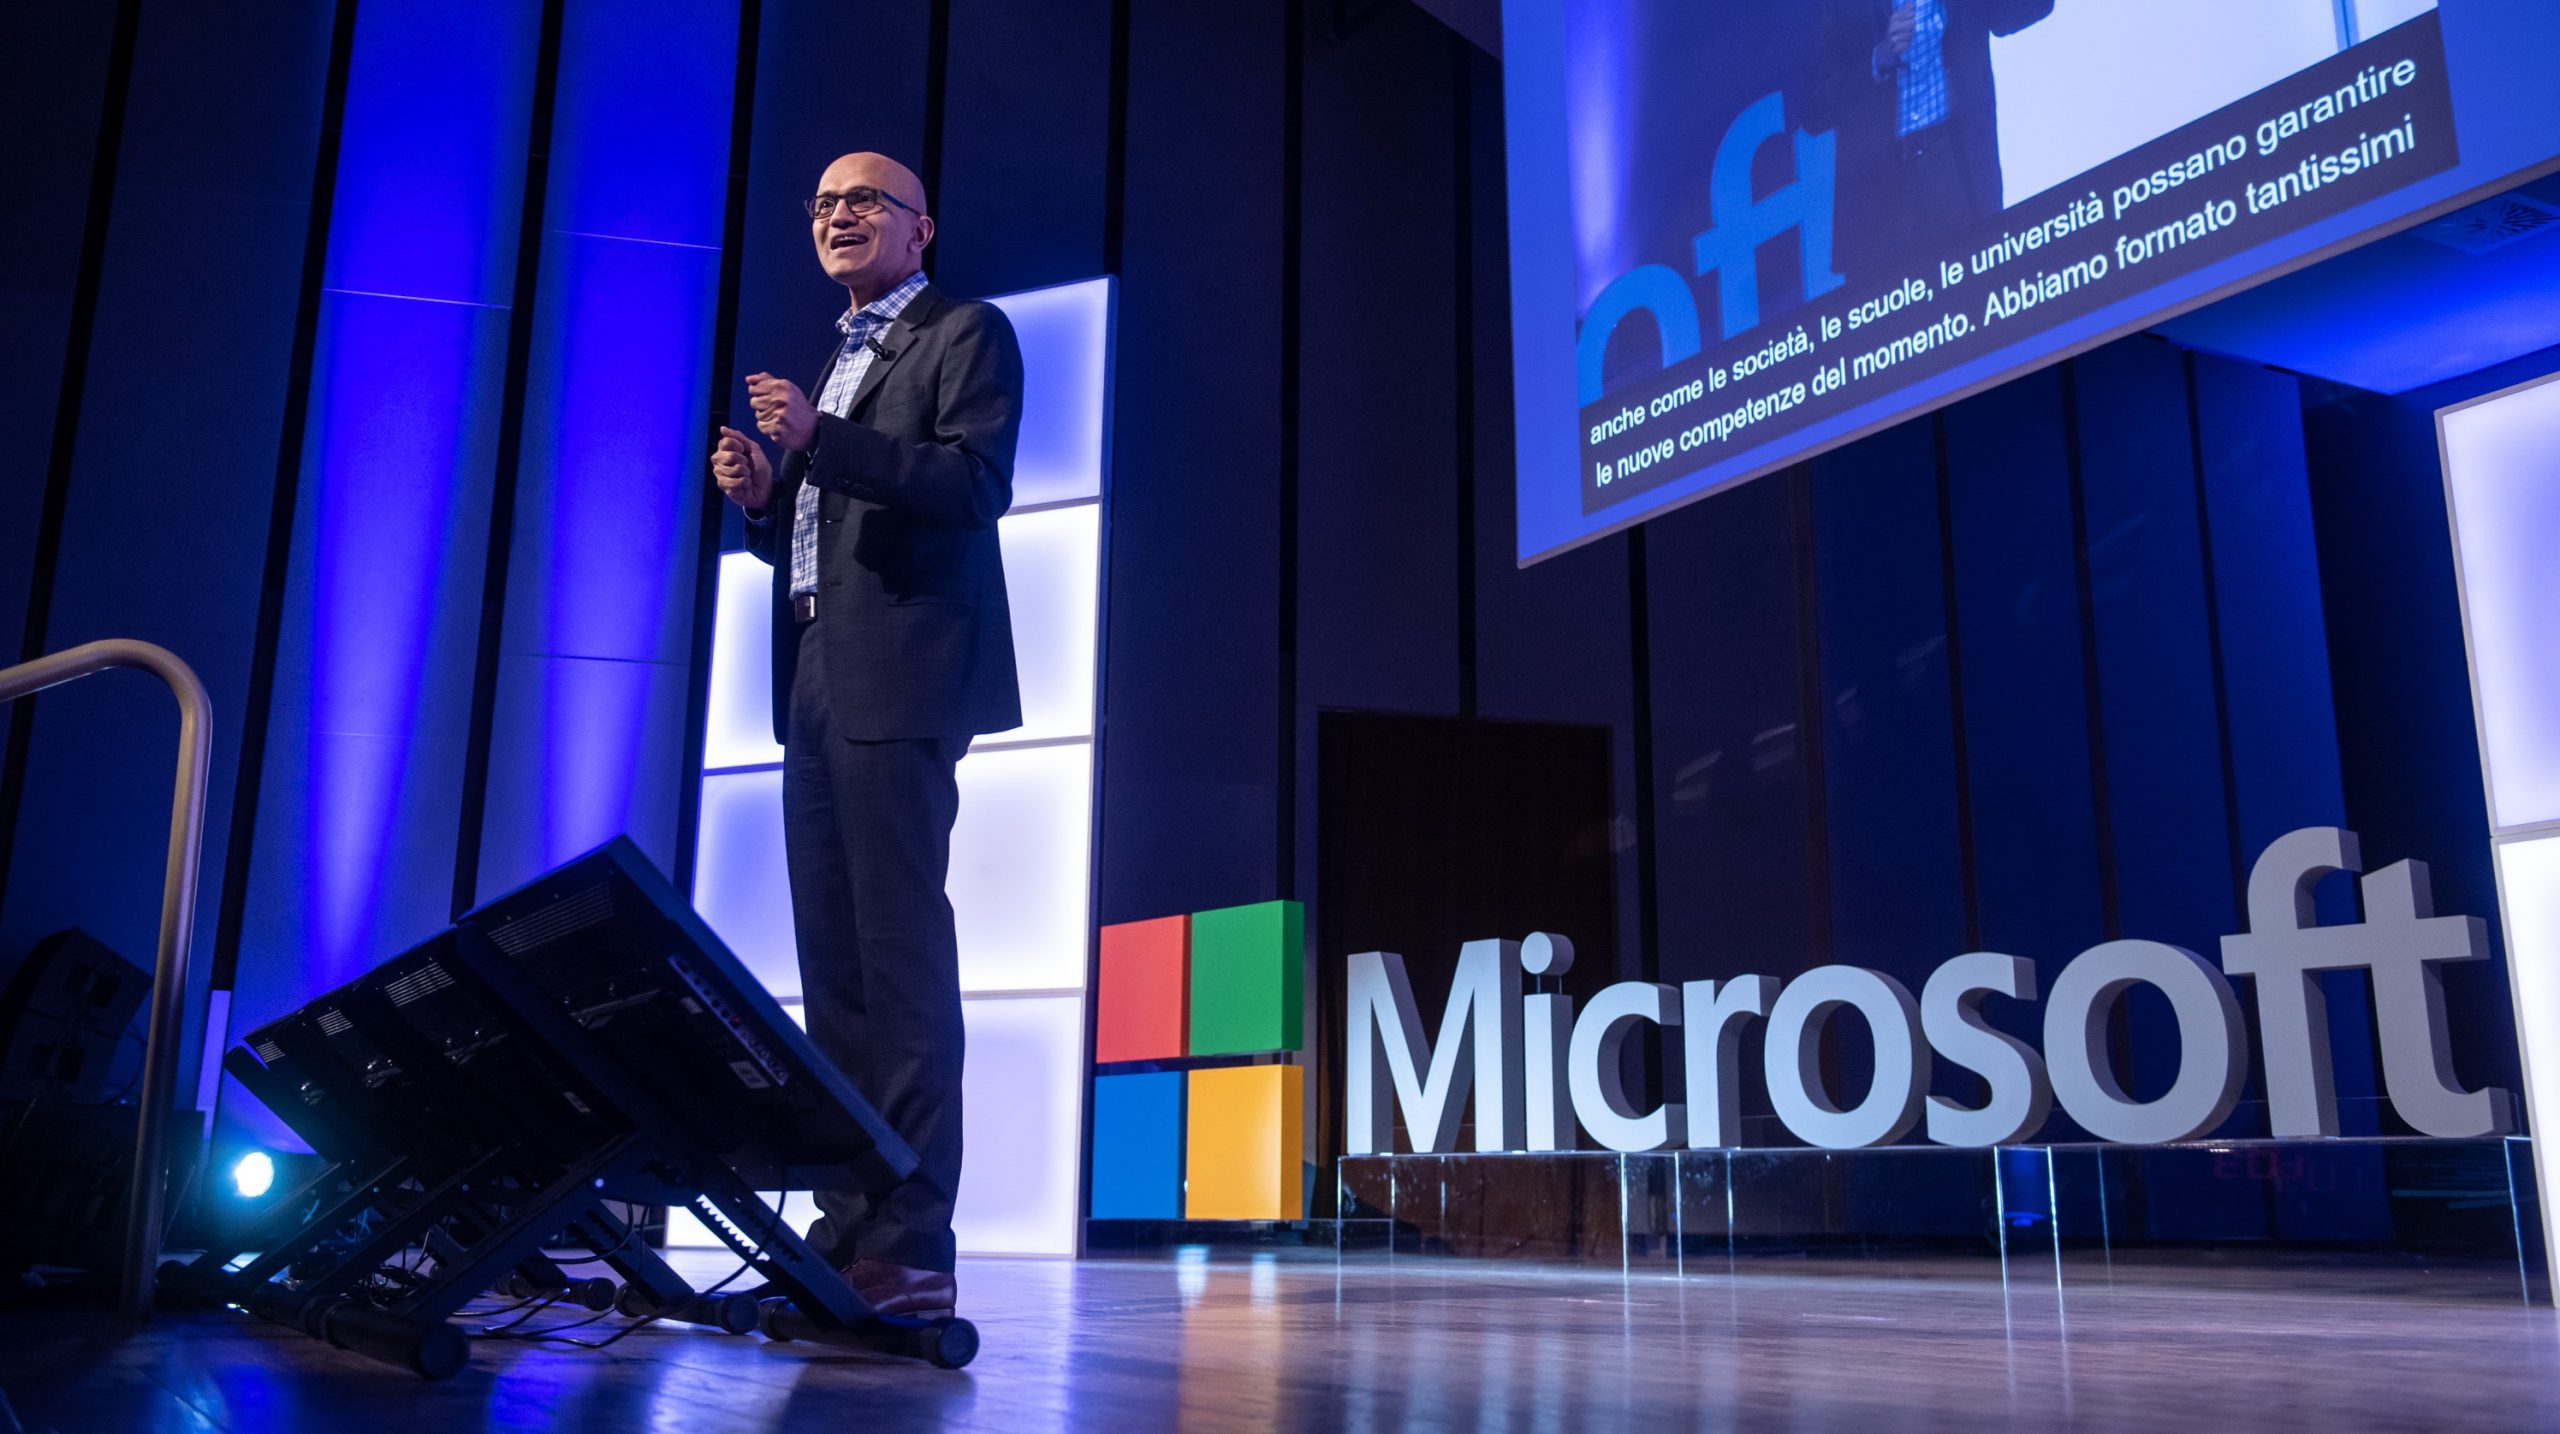 Microsoft premia il lavoro di beanTech